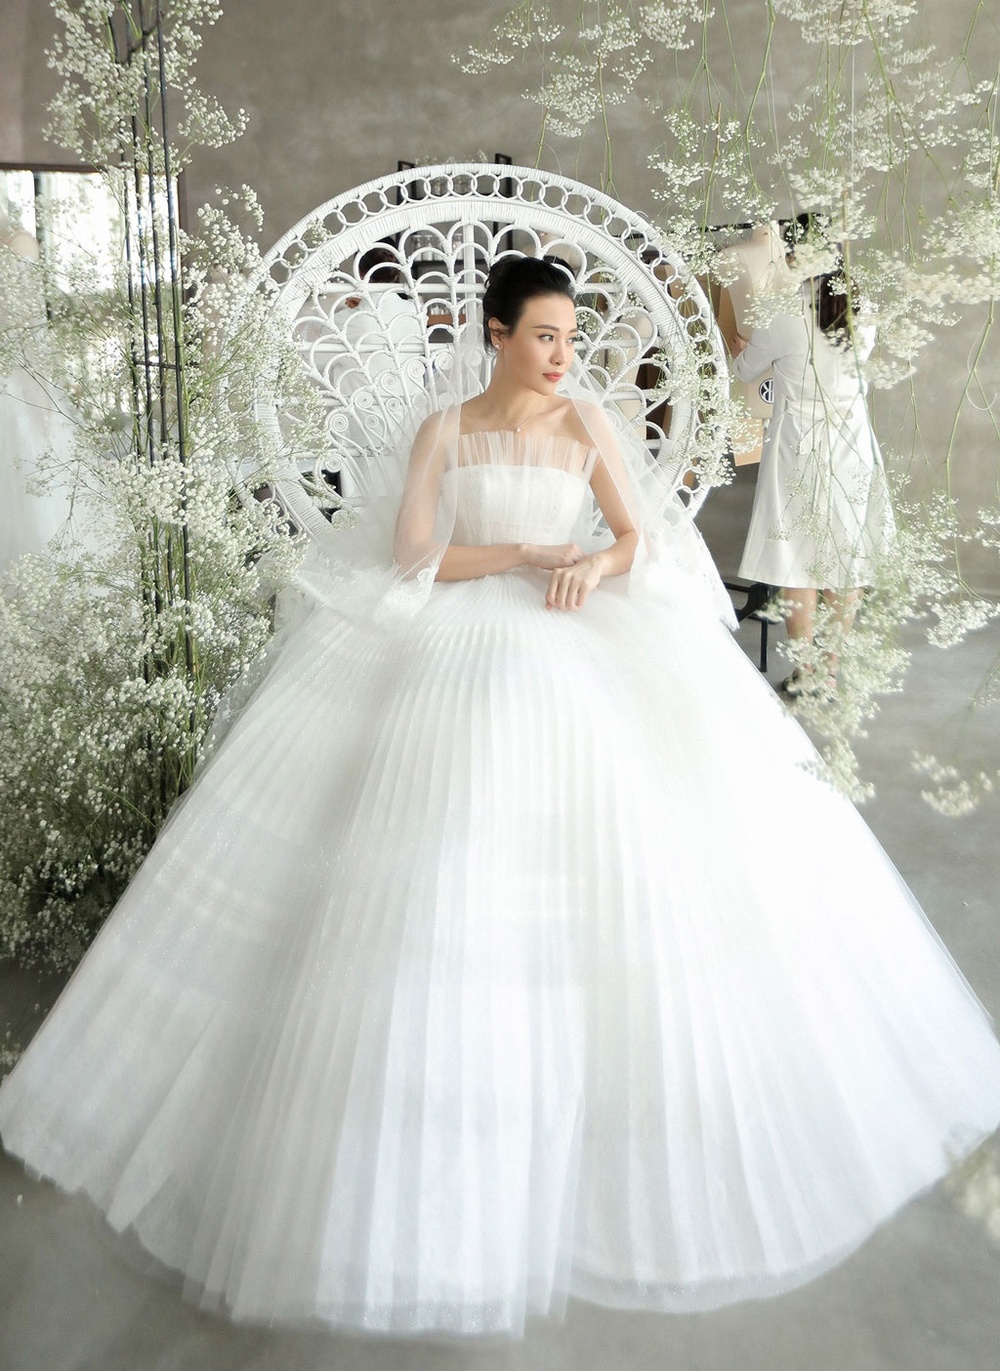  Đàm Thu Trang tựa nàng công chúa trong truyện cổ tích khi diện mẫu váy cưới bồng bềnh. (Ảnh: FB Đàm Thu Trang)